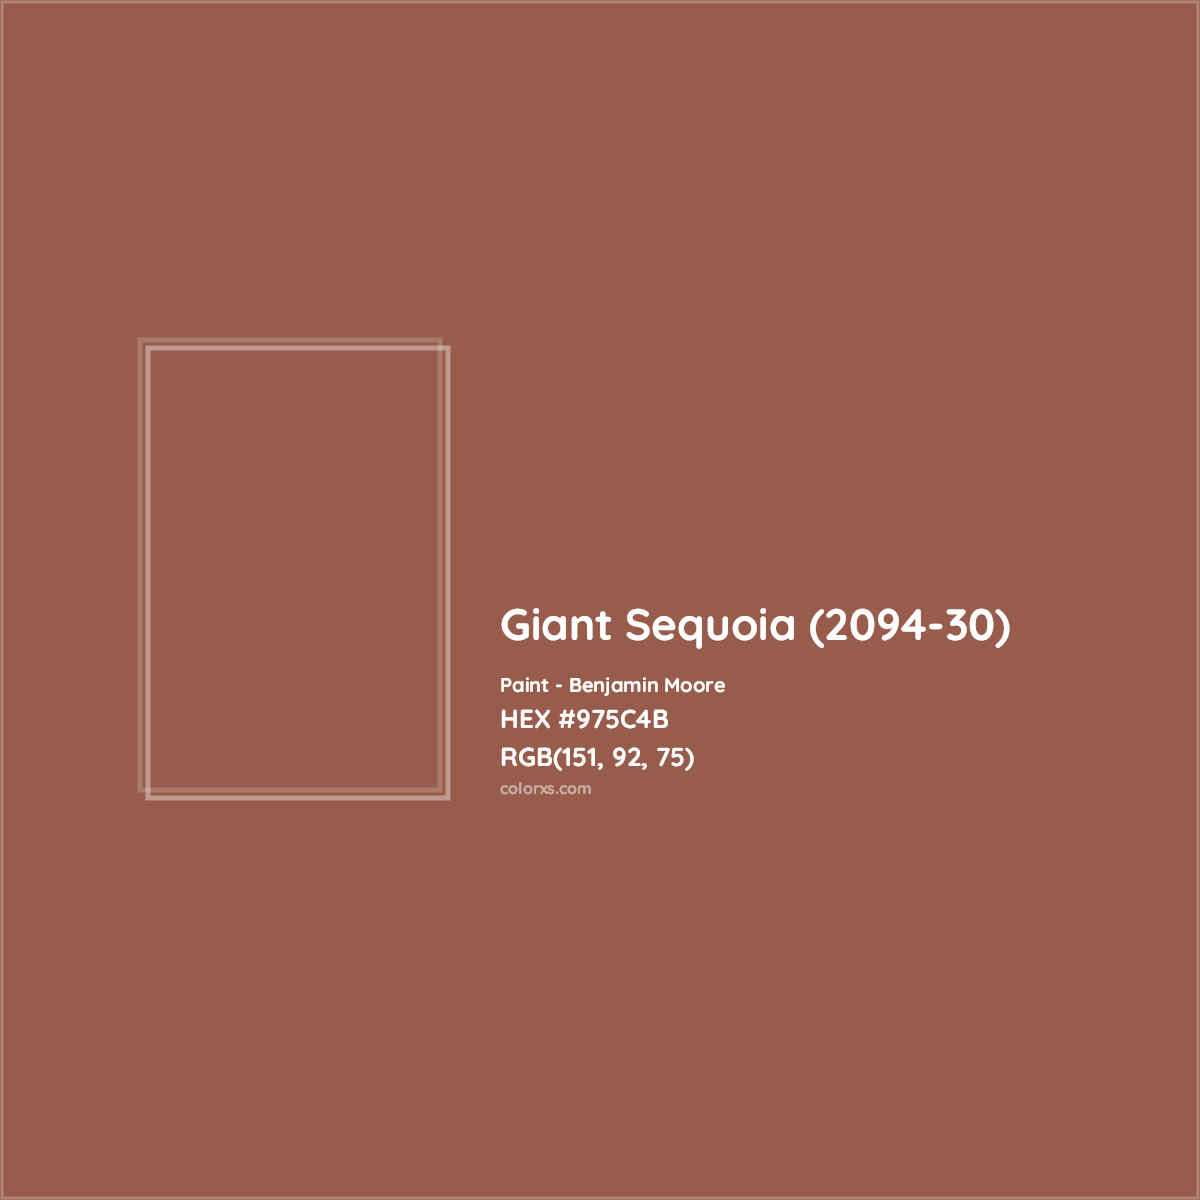 HEX #975C4B Giant Sequoia (2094-30) Paint Benjamin Moore - Color Code